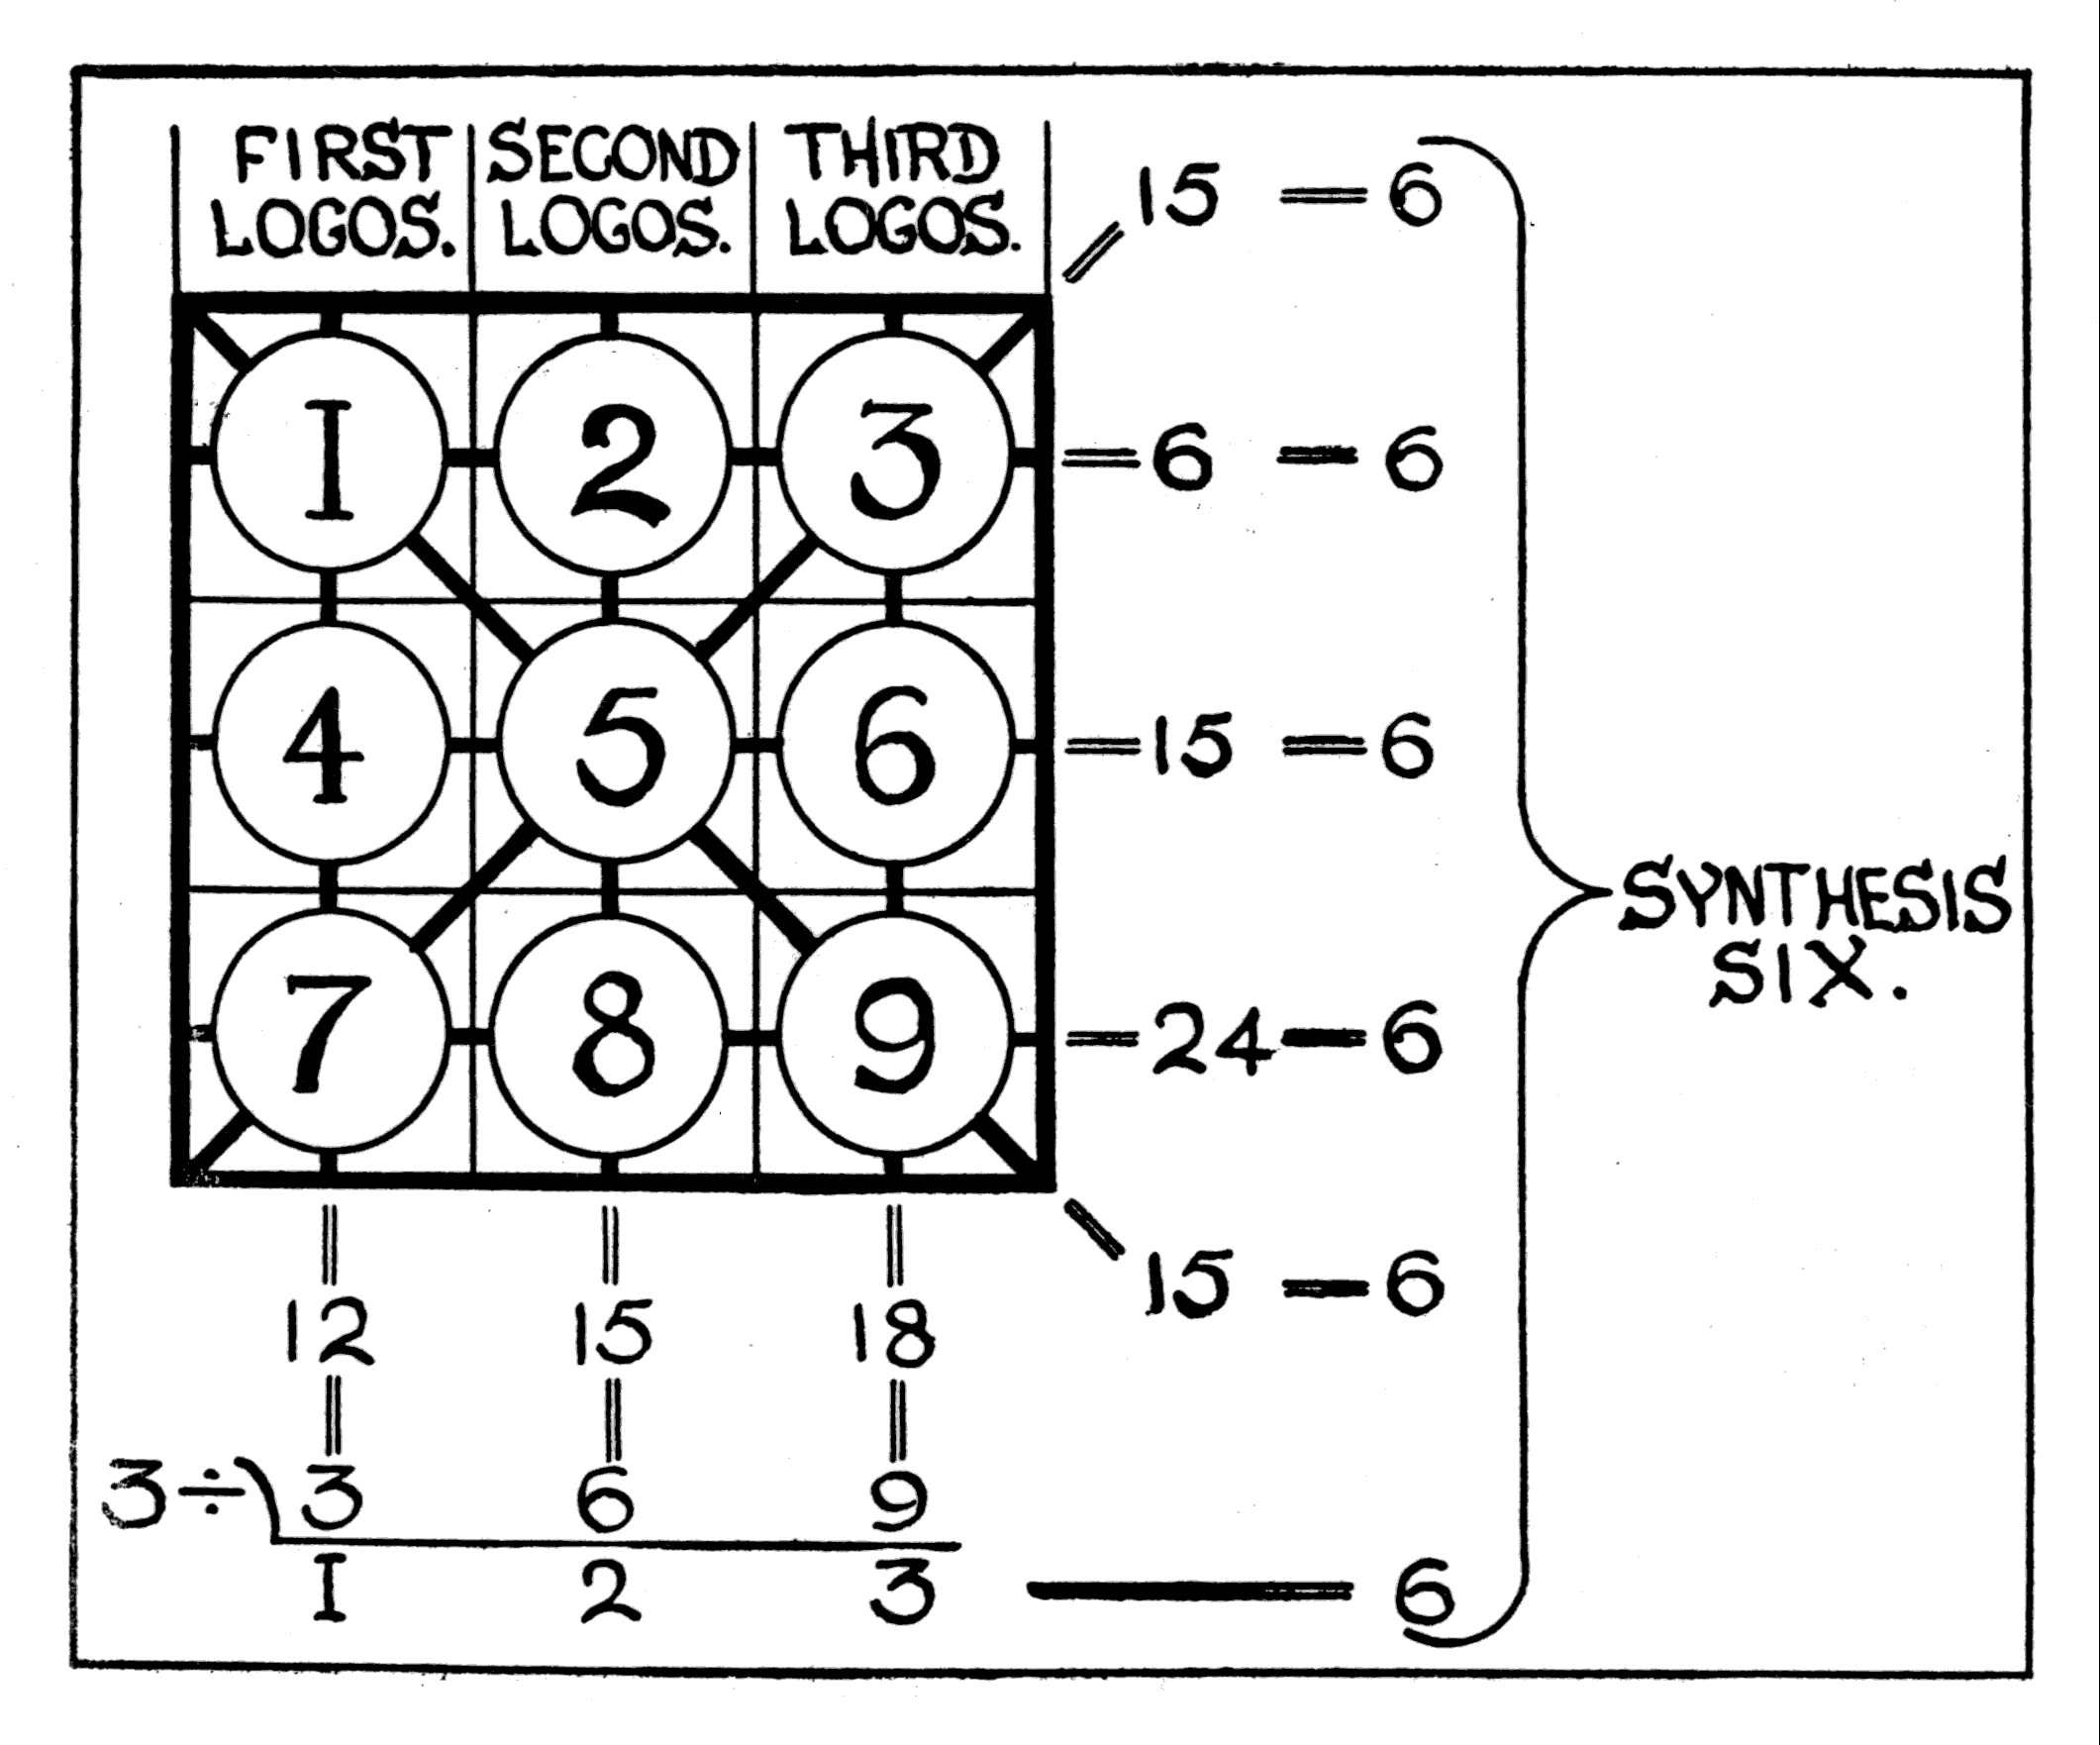 Diagram 3B